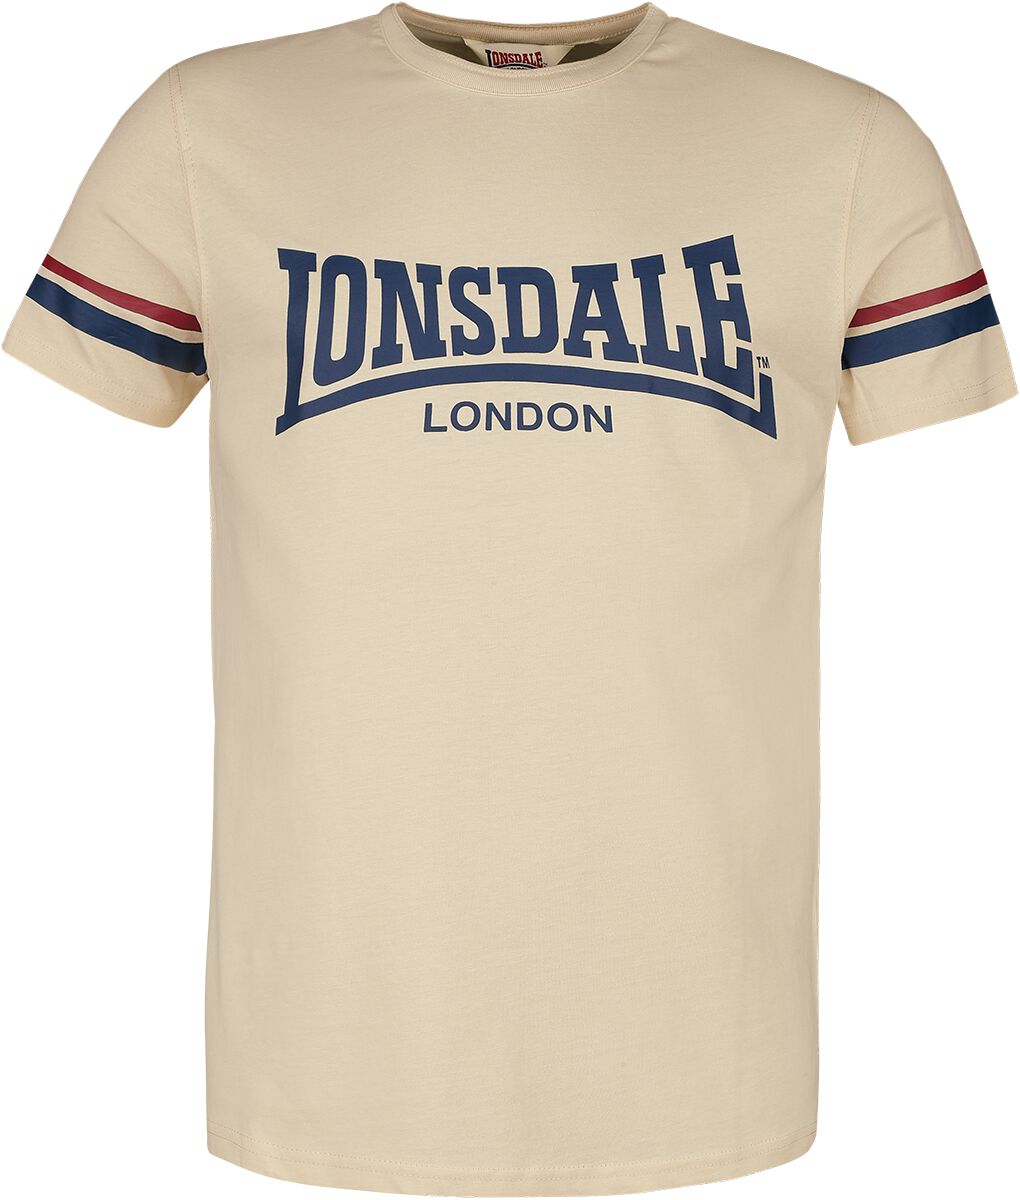 CREICH T-Shirt sand von Lonsdale London